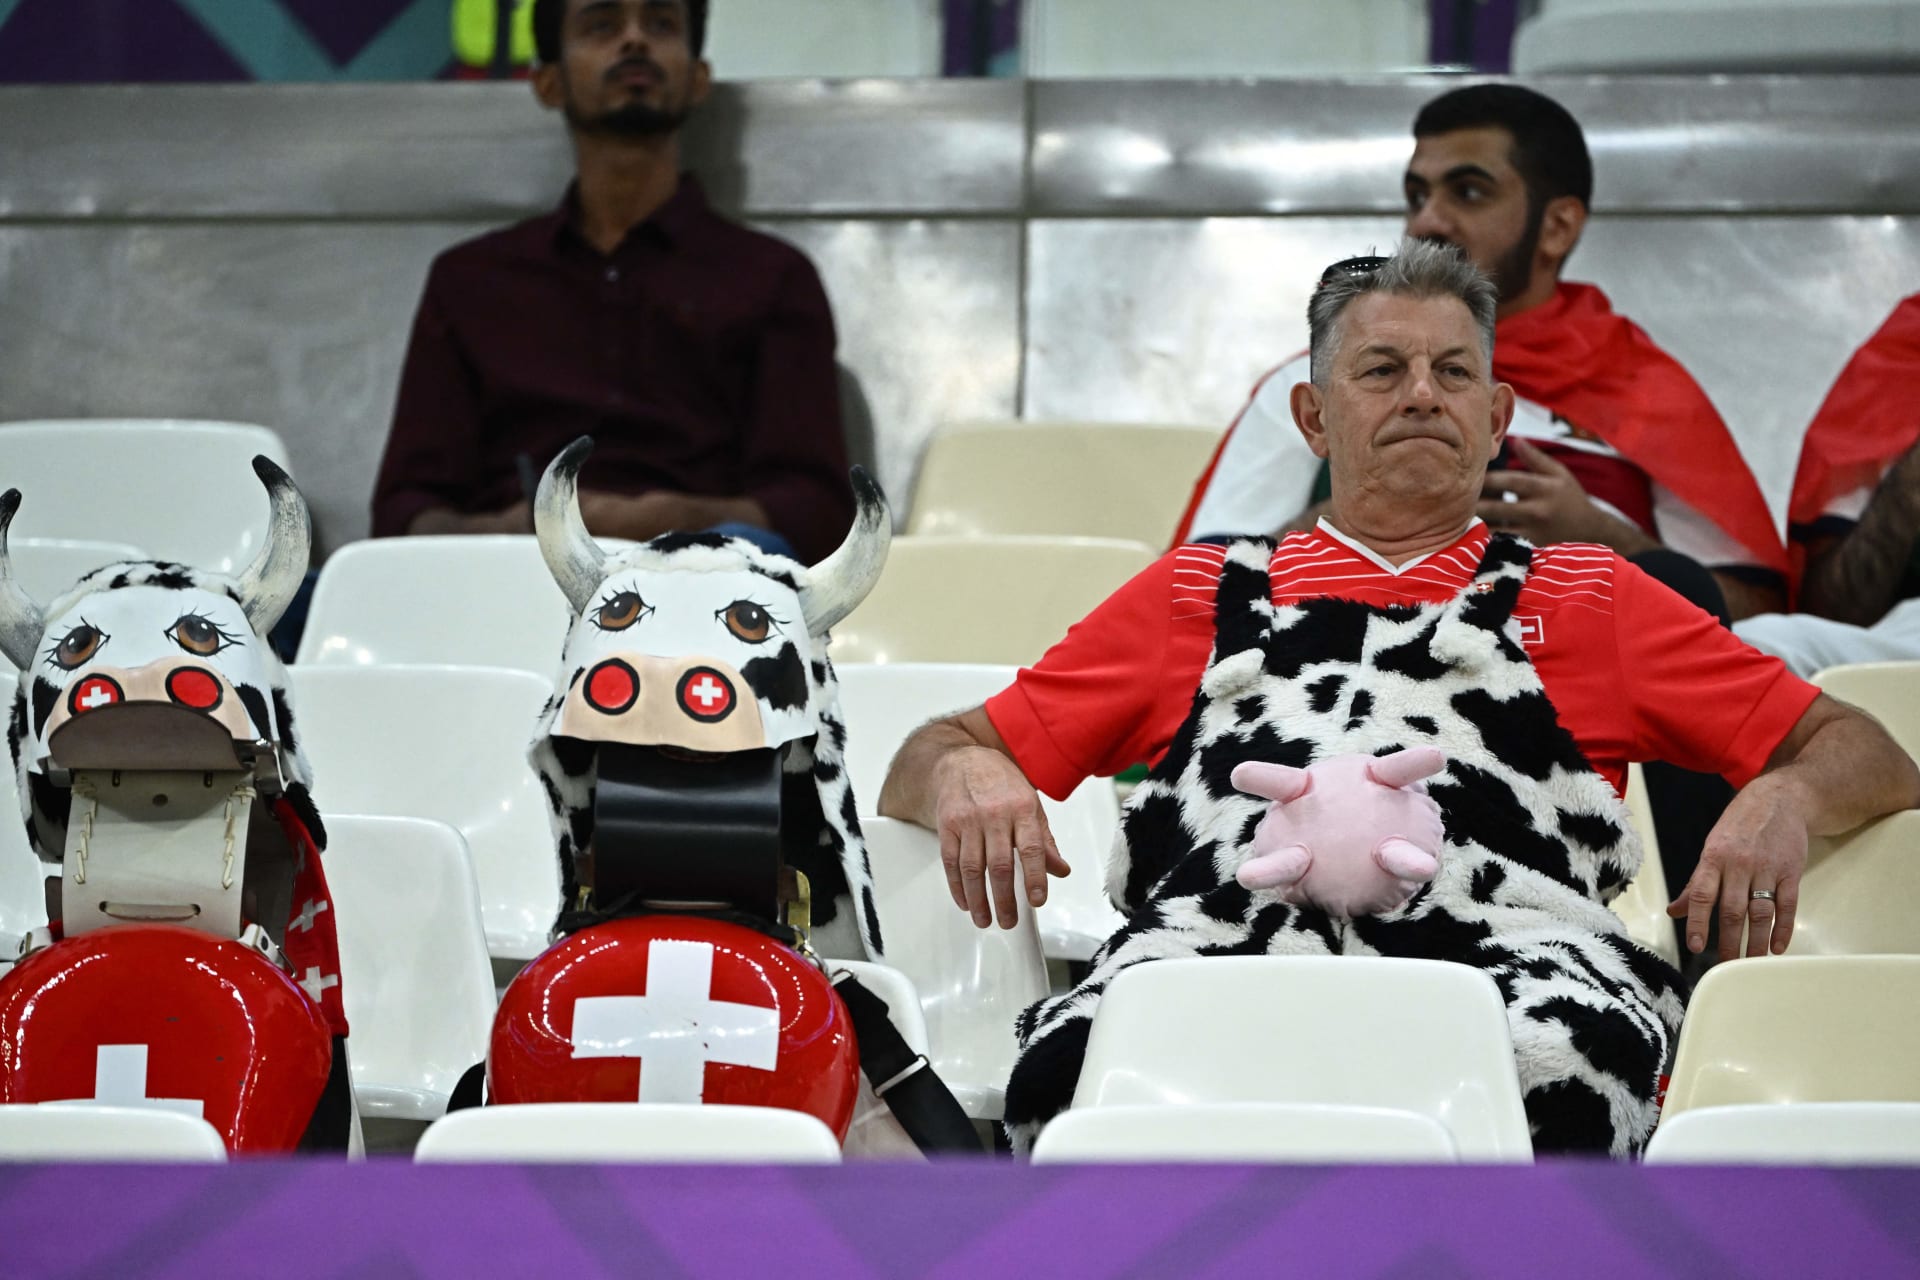 Seltsame Kostüme.. Die Kamera macht Bilder von der Weltmeisterschaft 2022 in Katar